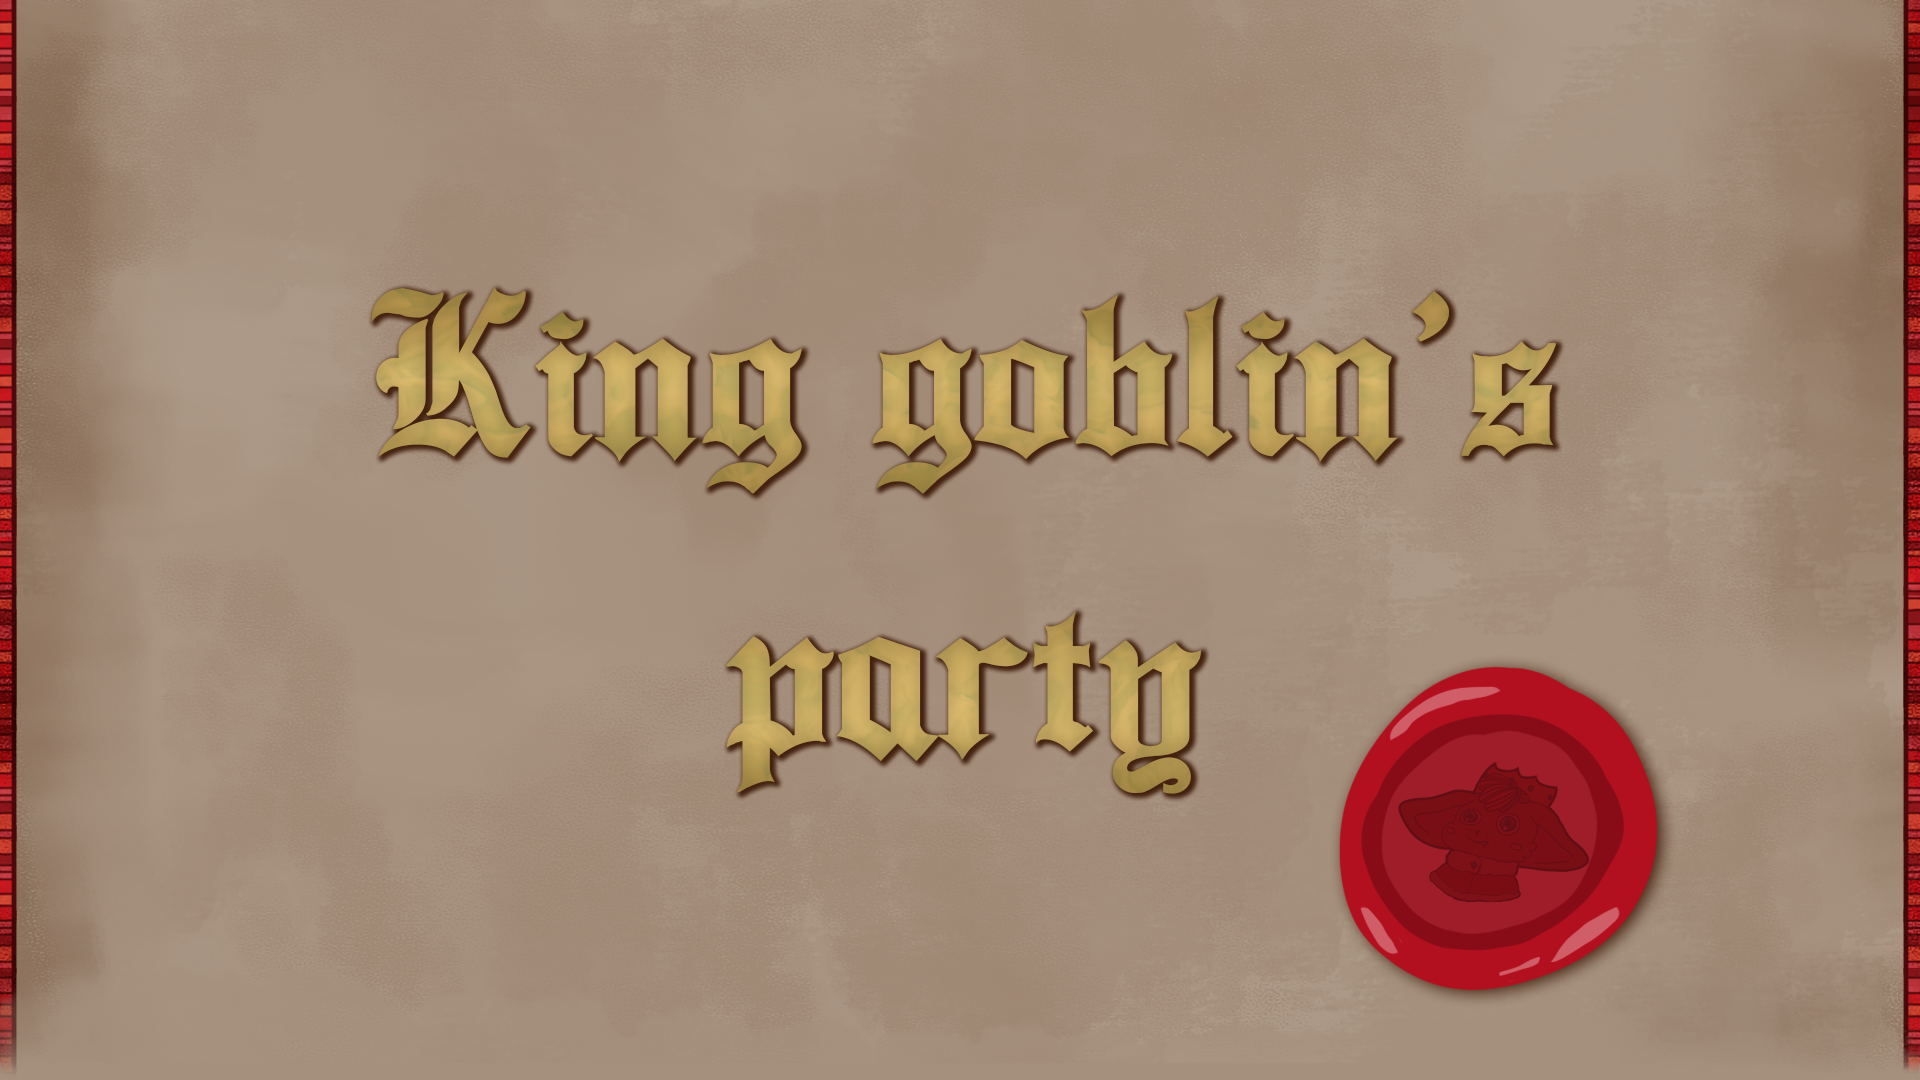 King goblin's party